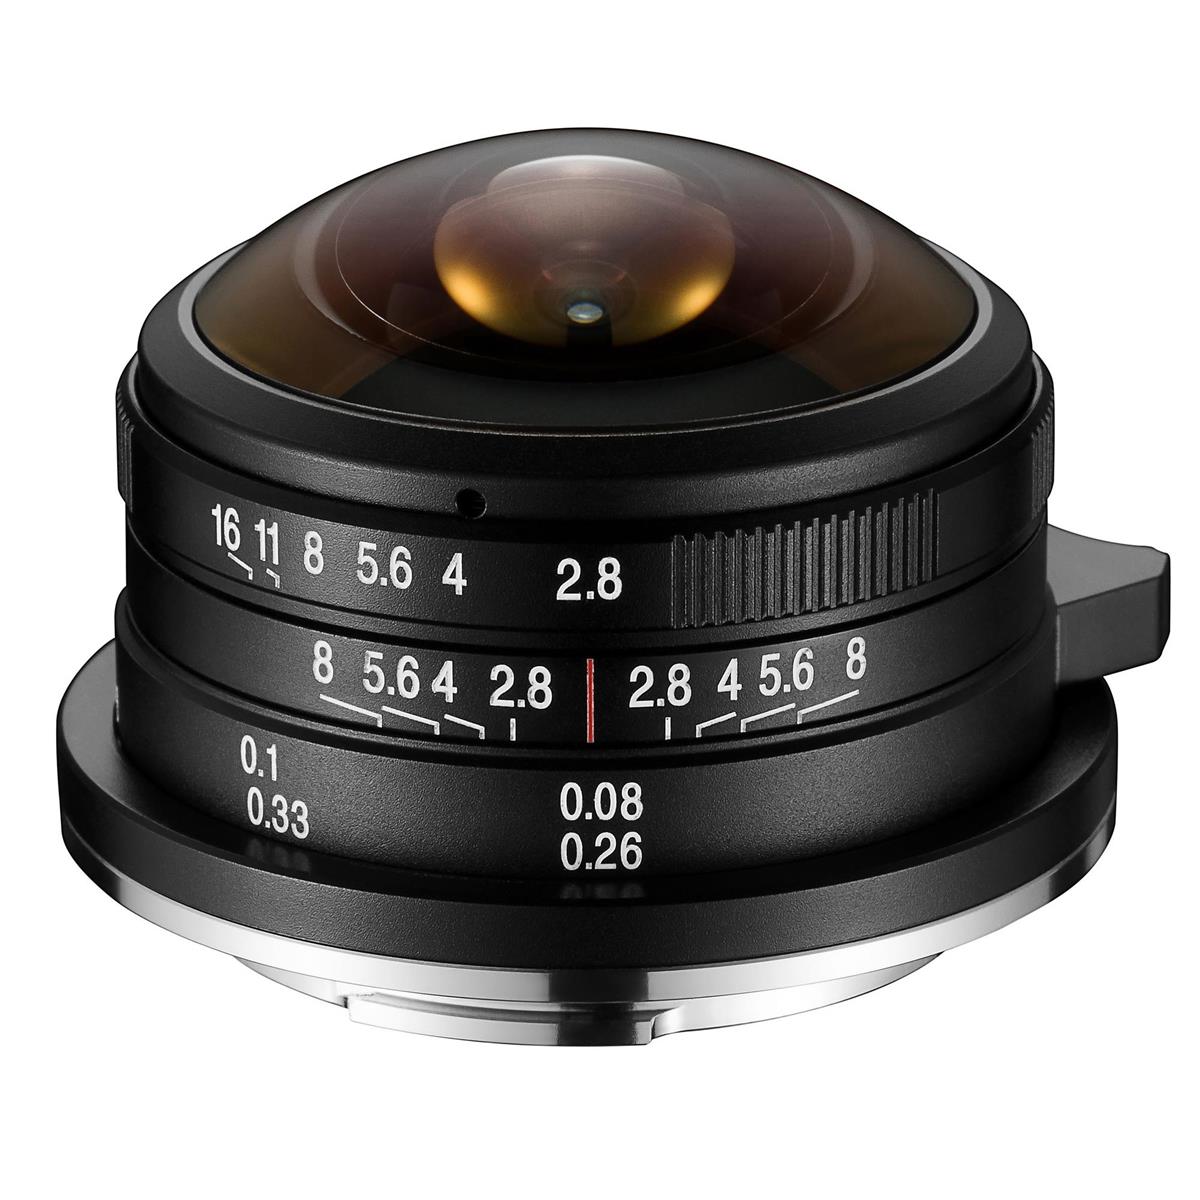 Venus Optics Laowa 4mm f/2.8 Fisheye Lens for Micro Four Thirds